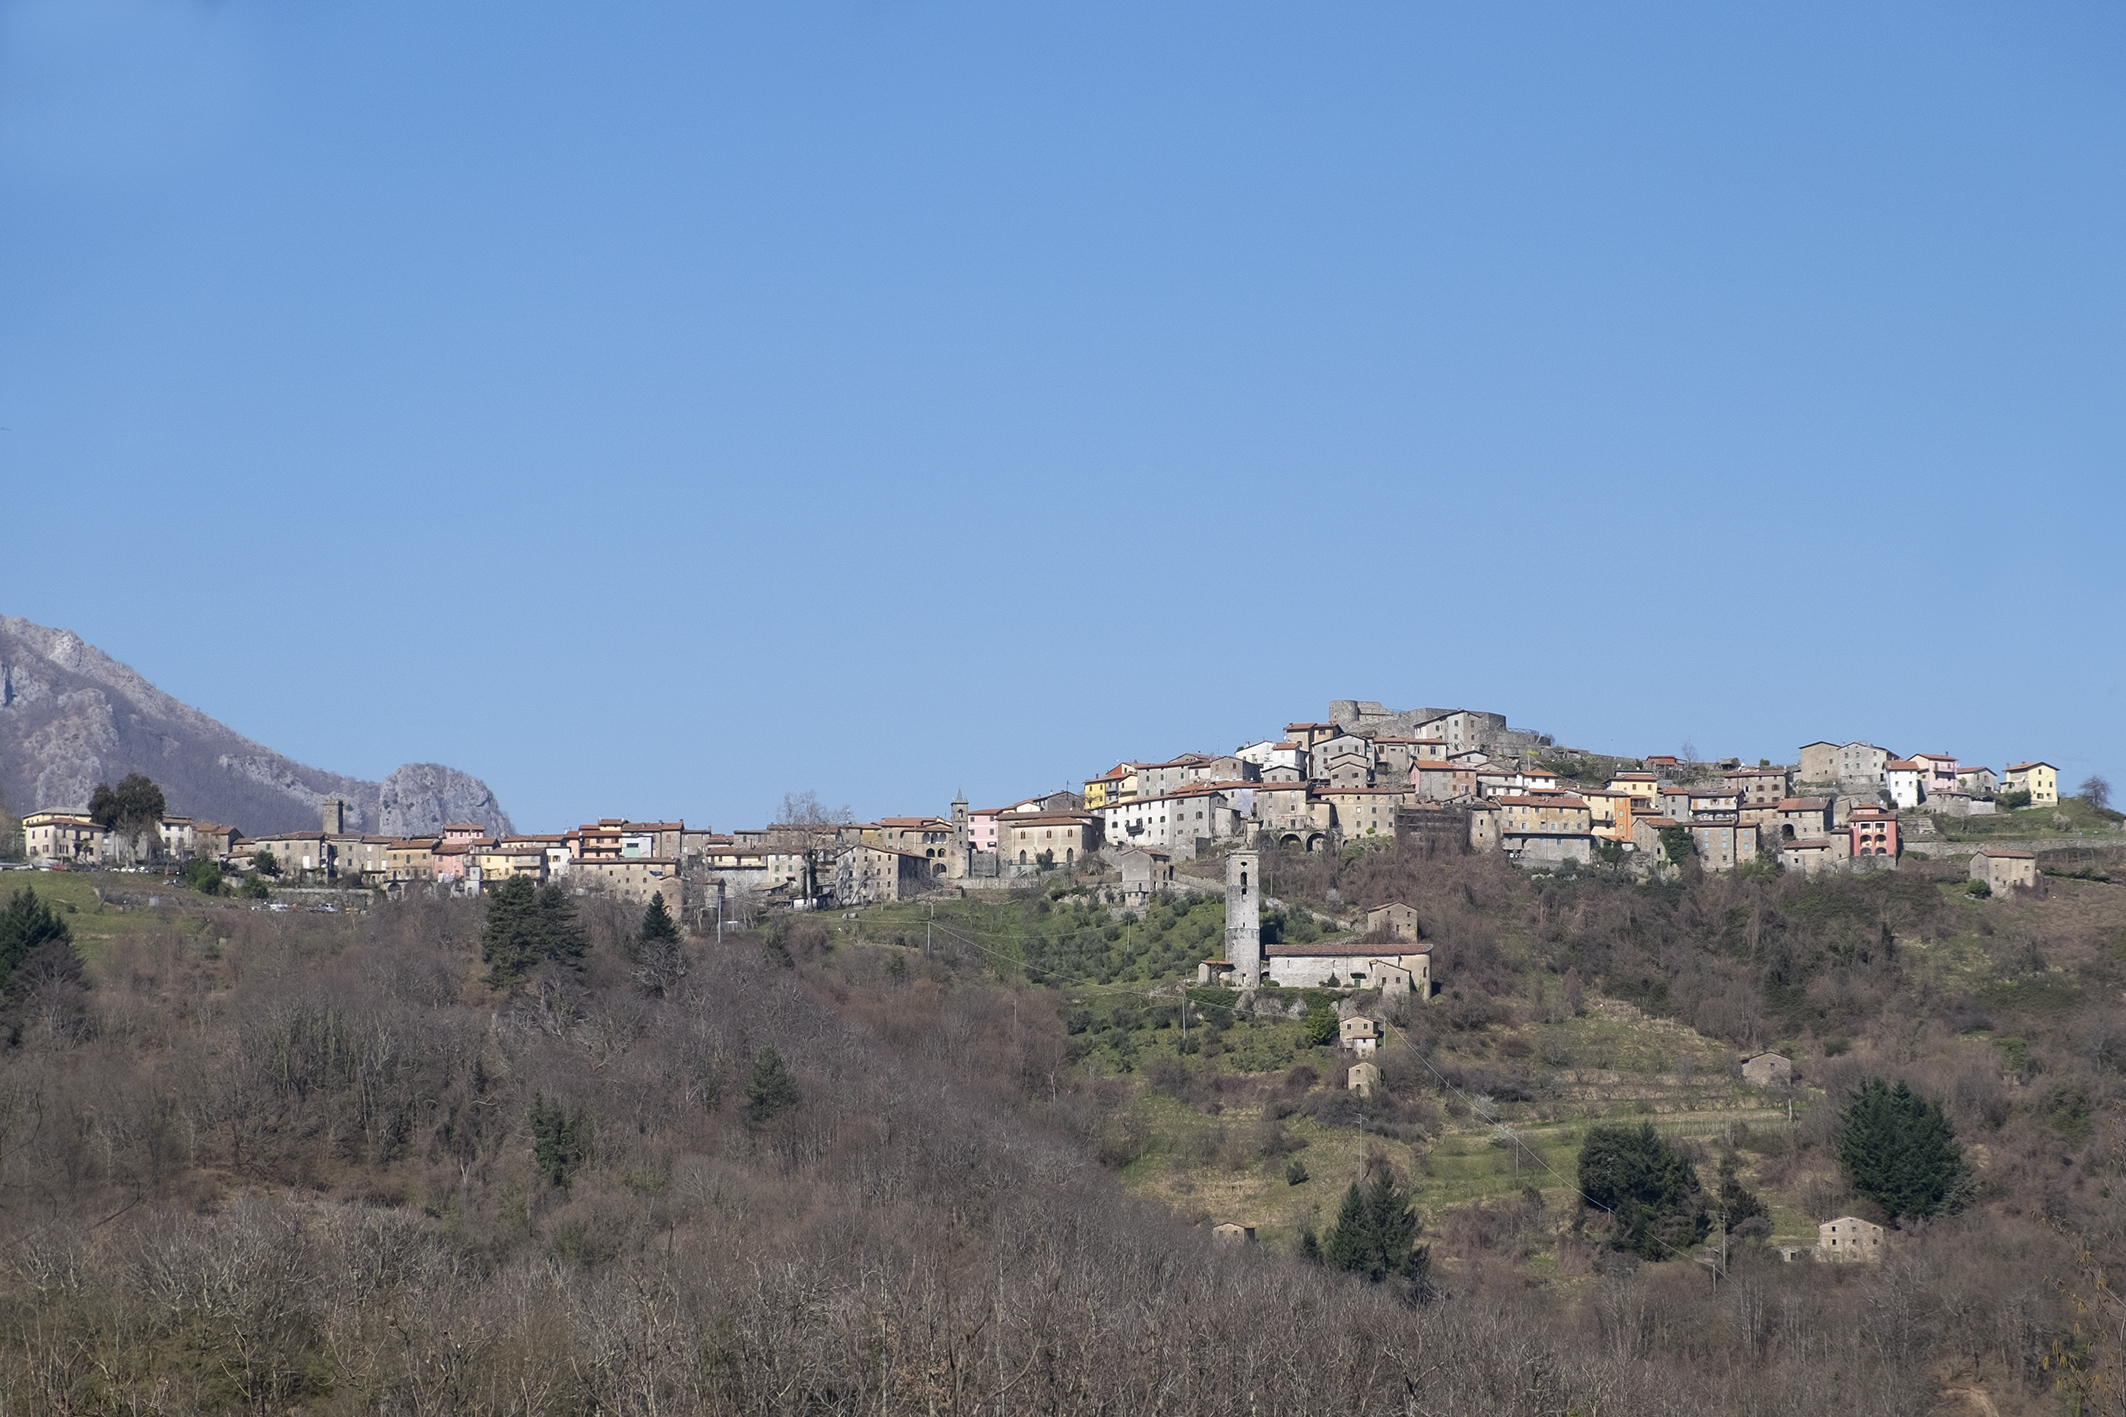 borgo, di crinale, Trassilico, Trasillico, Trasiclu, Trasilice, Trassalico (VIII-XXI)